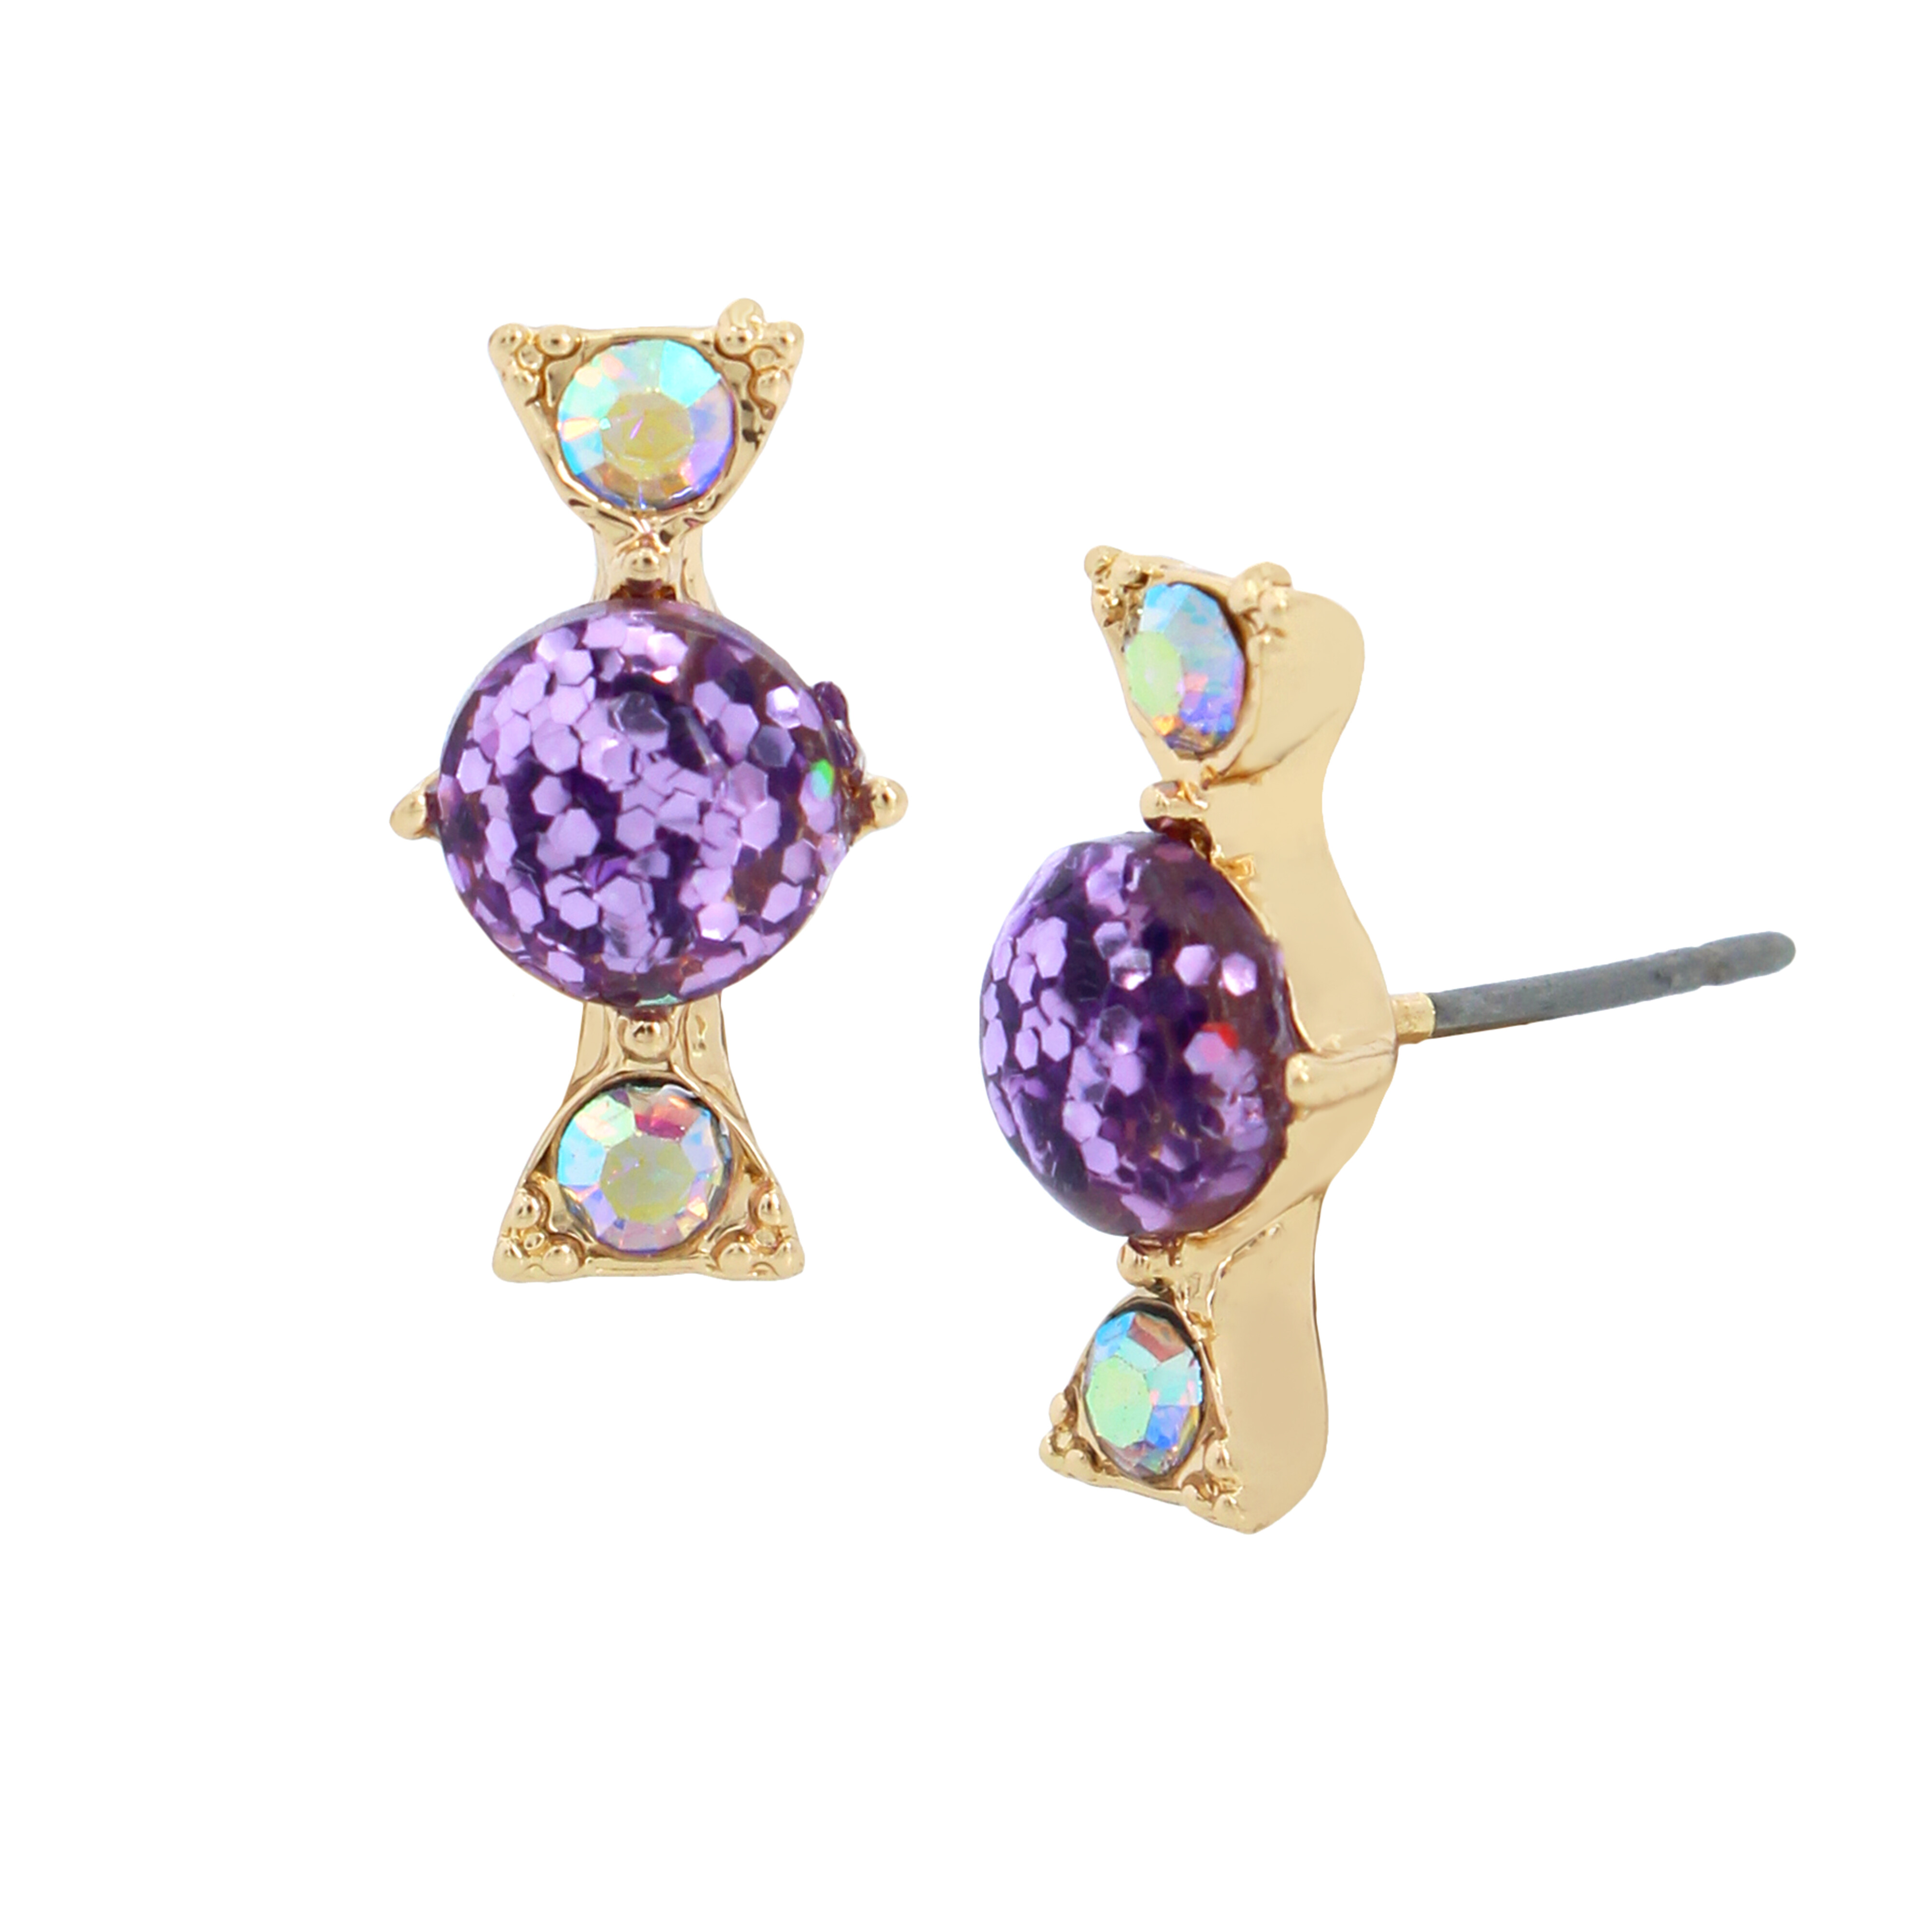 Bijuterii Femei Betsey Johnson Candy Stud Earrings PurpleGold